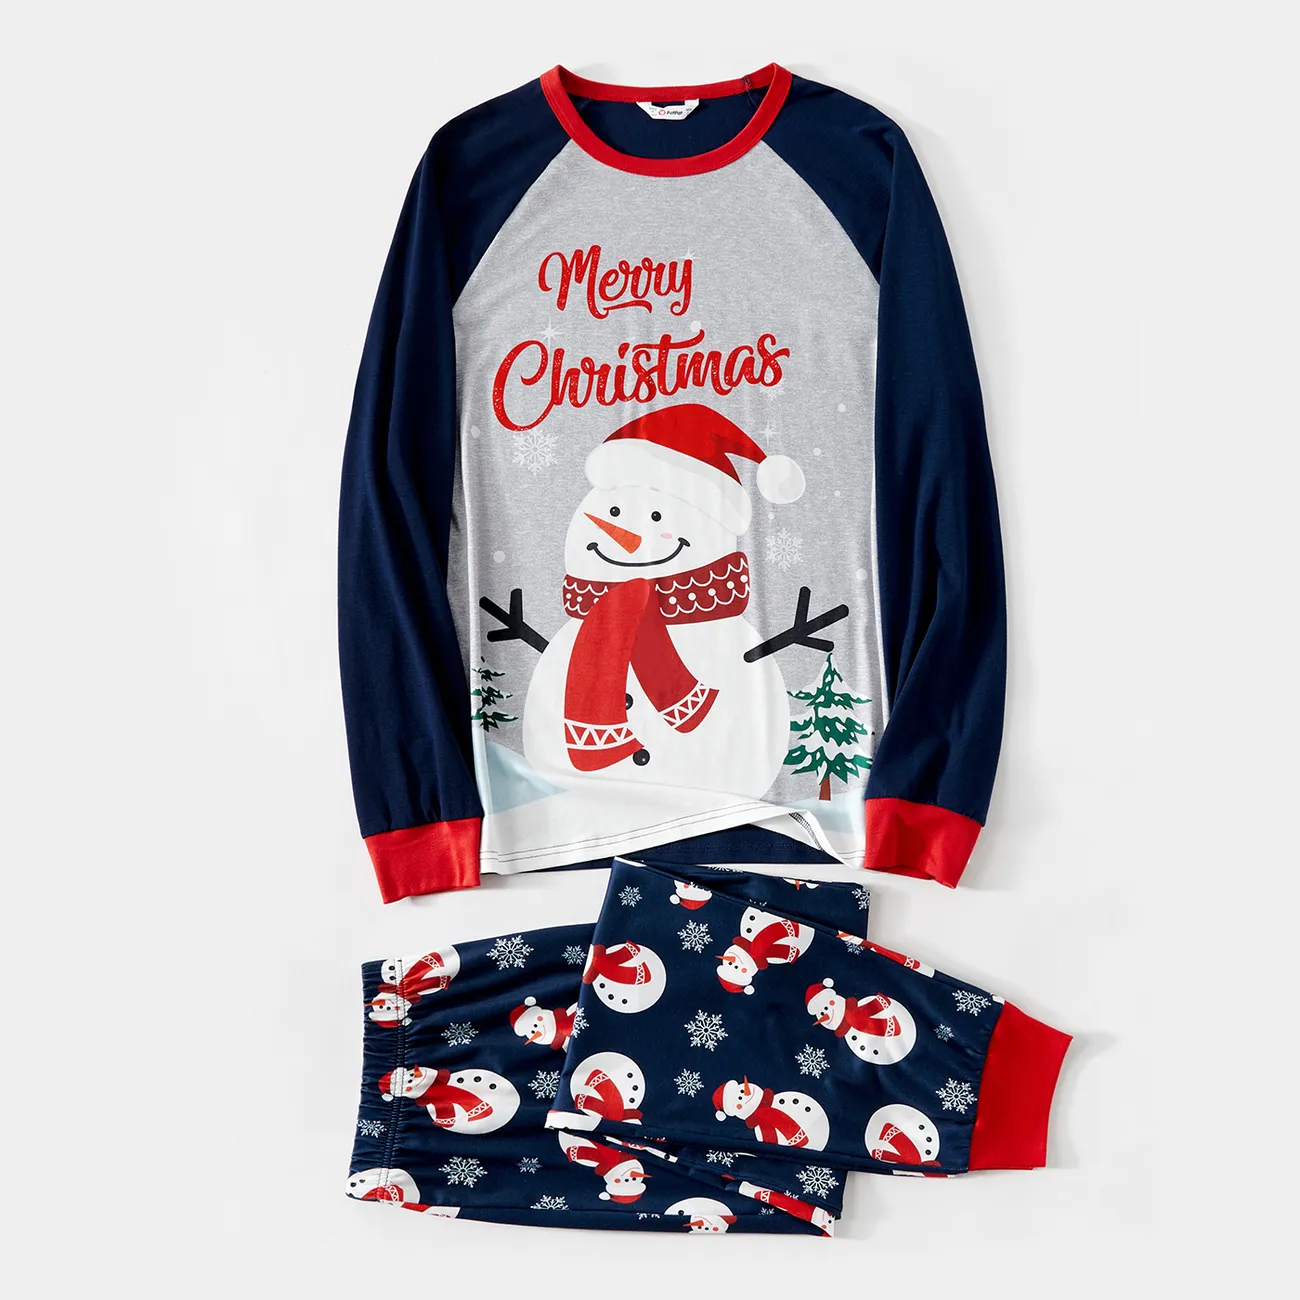 Natal Look de família Manga comprida Conjuntos de roupa para a família Pijamas (Flame Resistant) colorblock big image 1